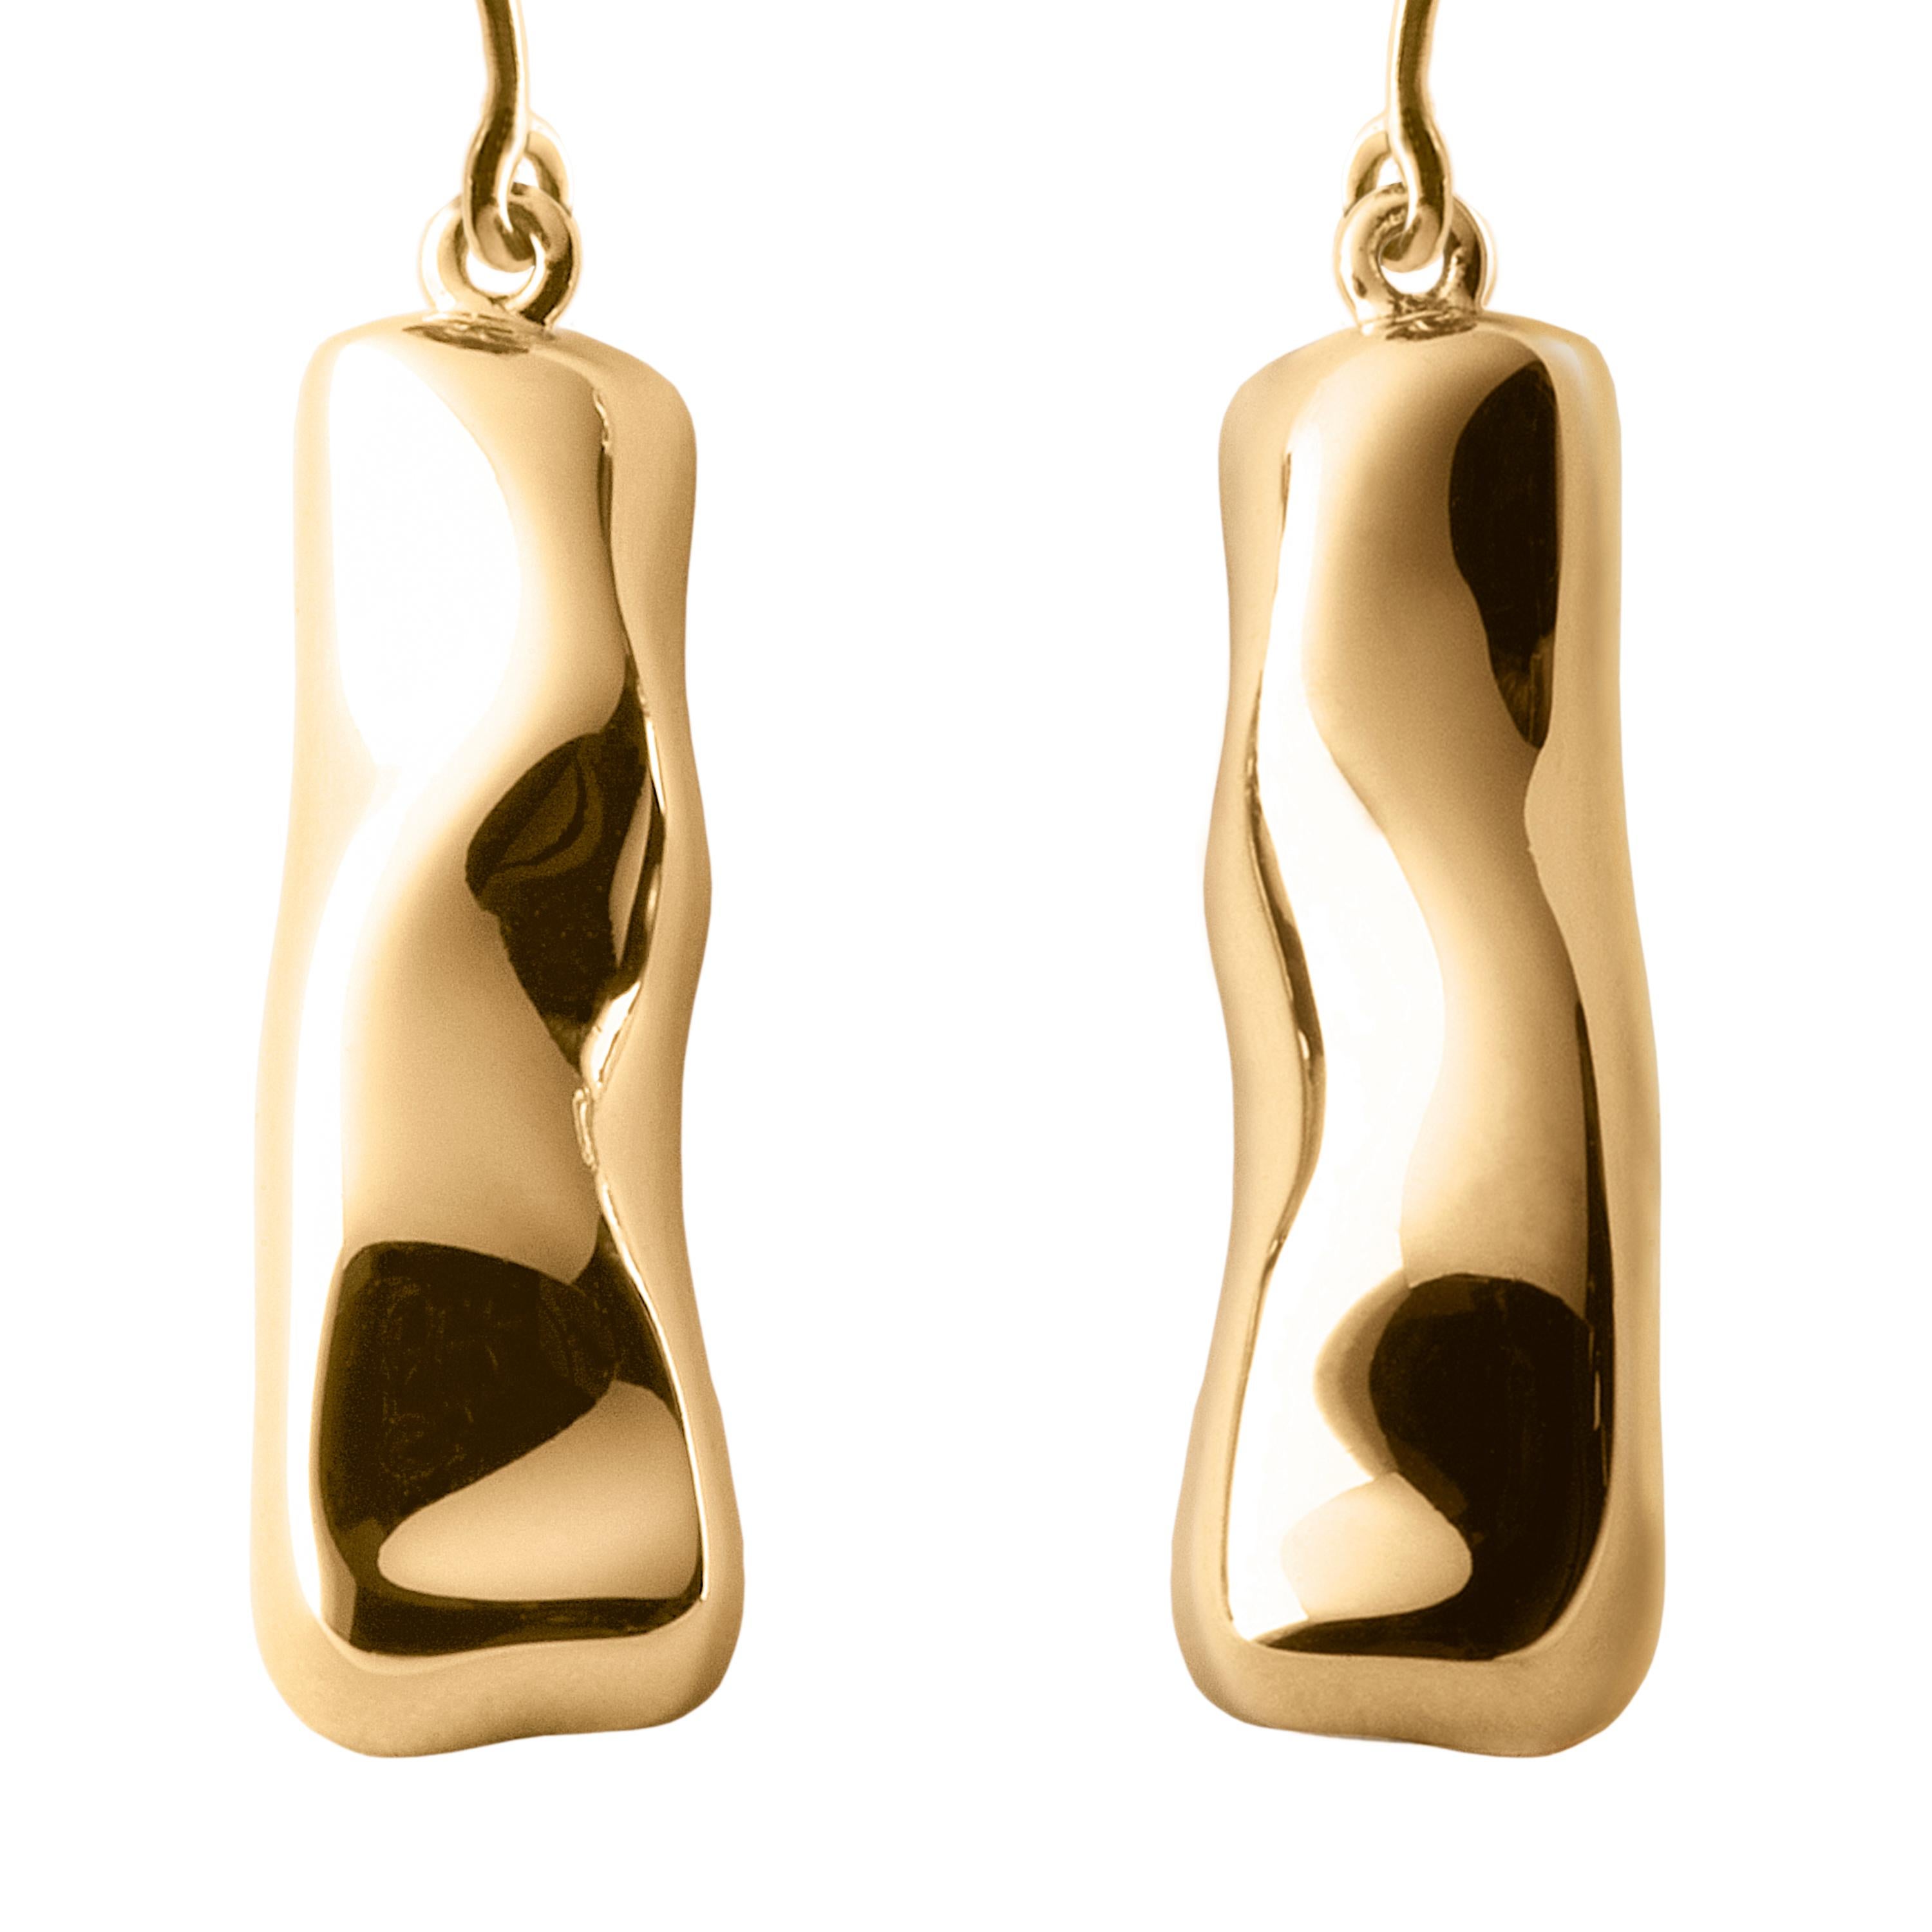 Die in limitierter Auflage im Mailänder Atelier von Nathalie Jean handgefertigten Ohrringe Mercure sind aus 18 Karat Roségold, einer warmen, raffinierten Farbe, die dem Gelbgold sehr ähnlich ist. Kleine, zierliche, vibrierende Skulpturen mit